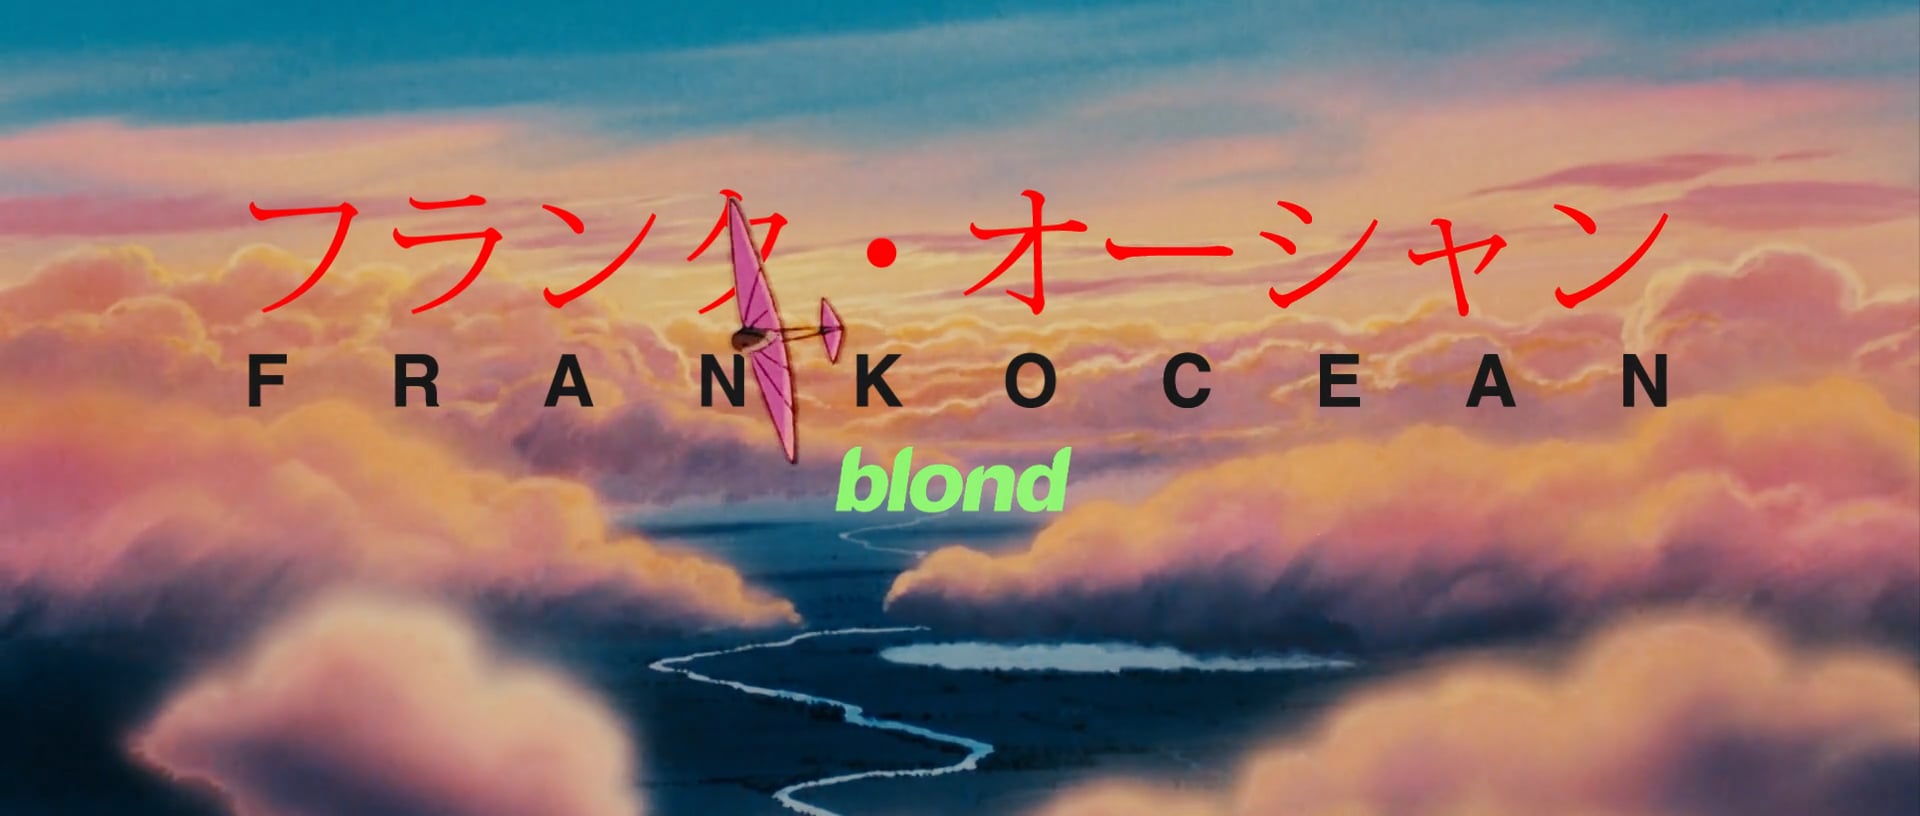 Frank Ocean - Blonde Tribute